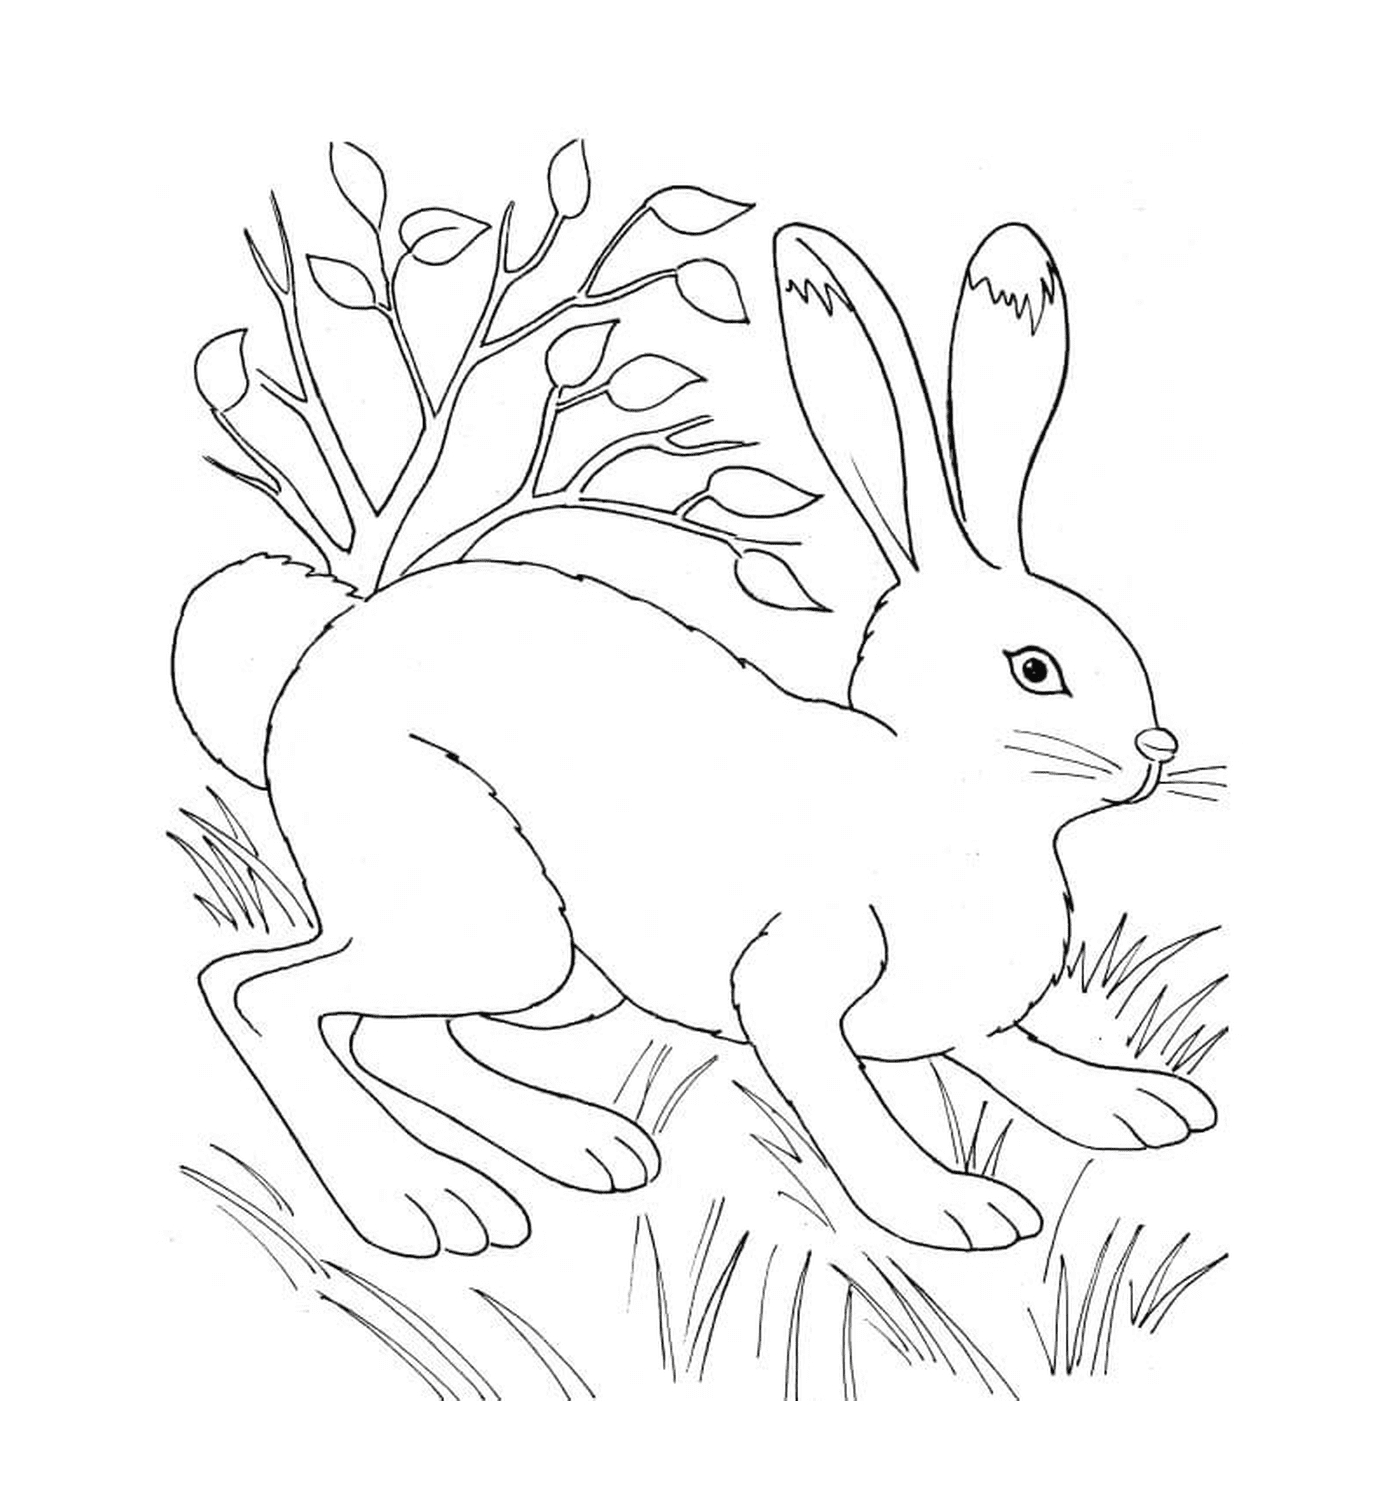  Кролик в природе рядом с растительностью 